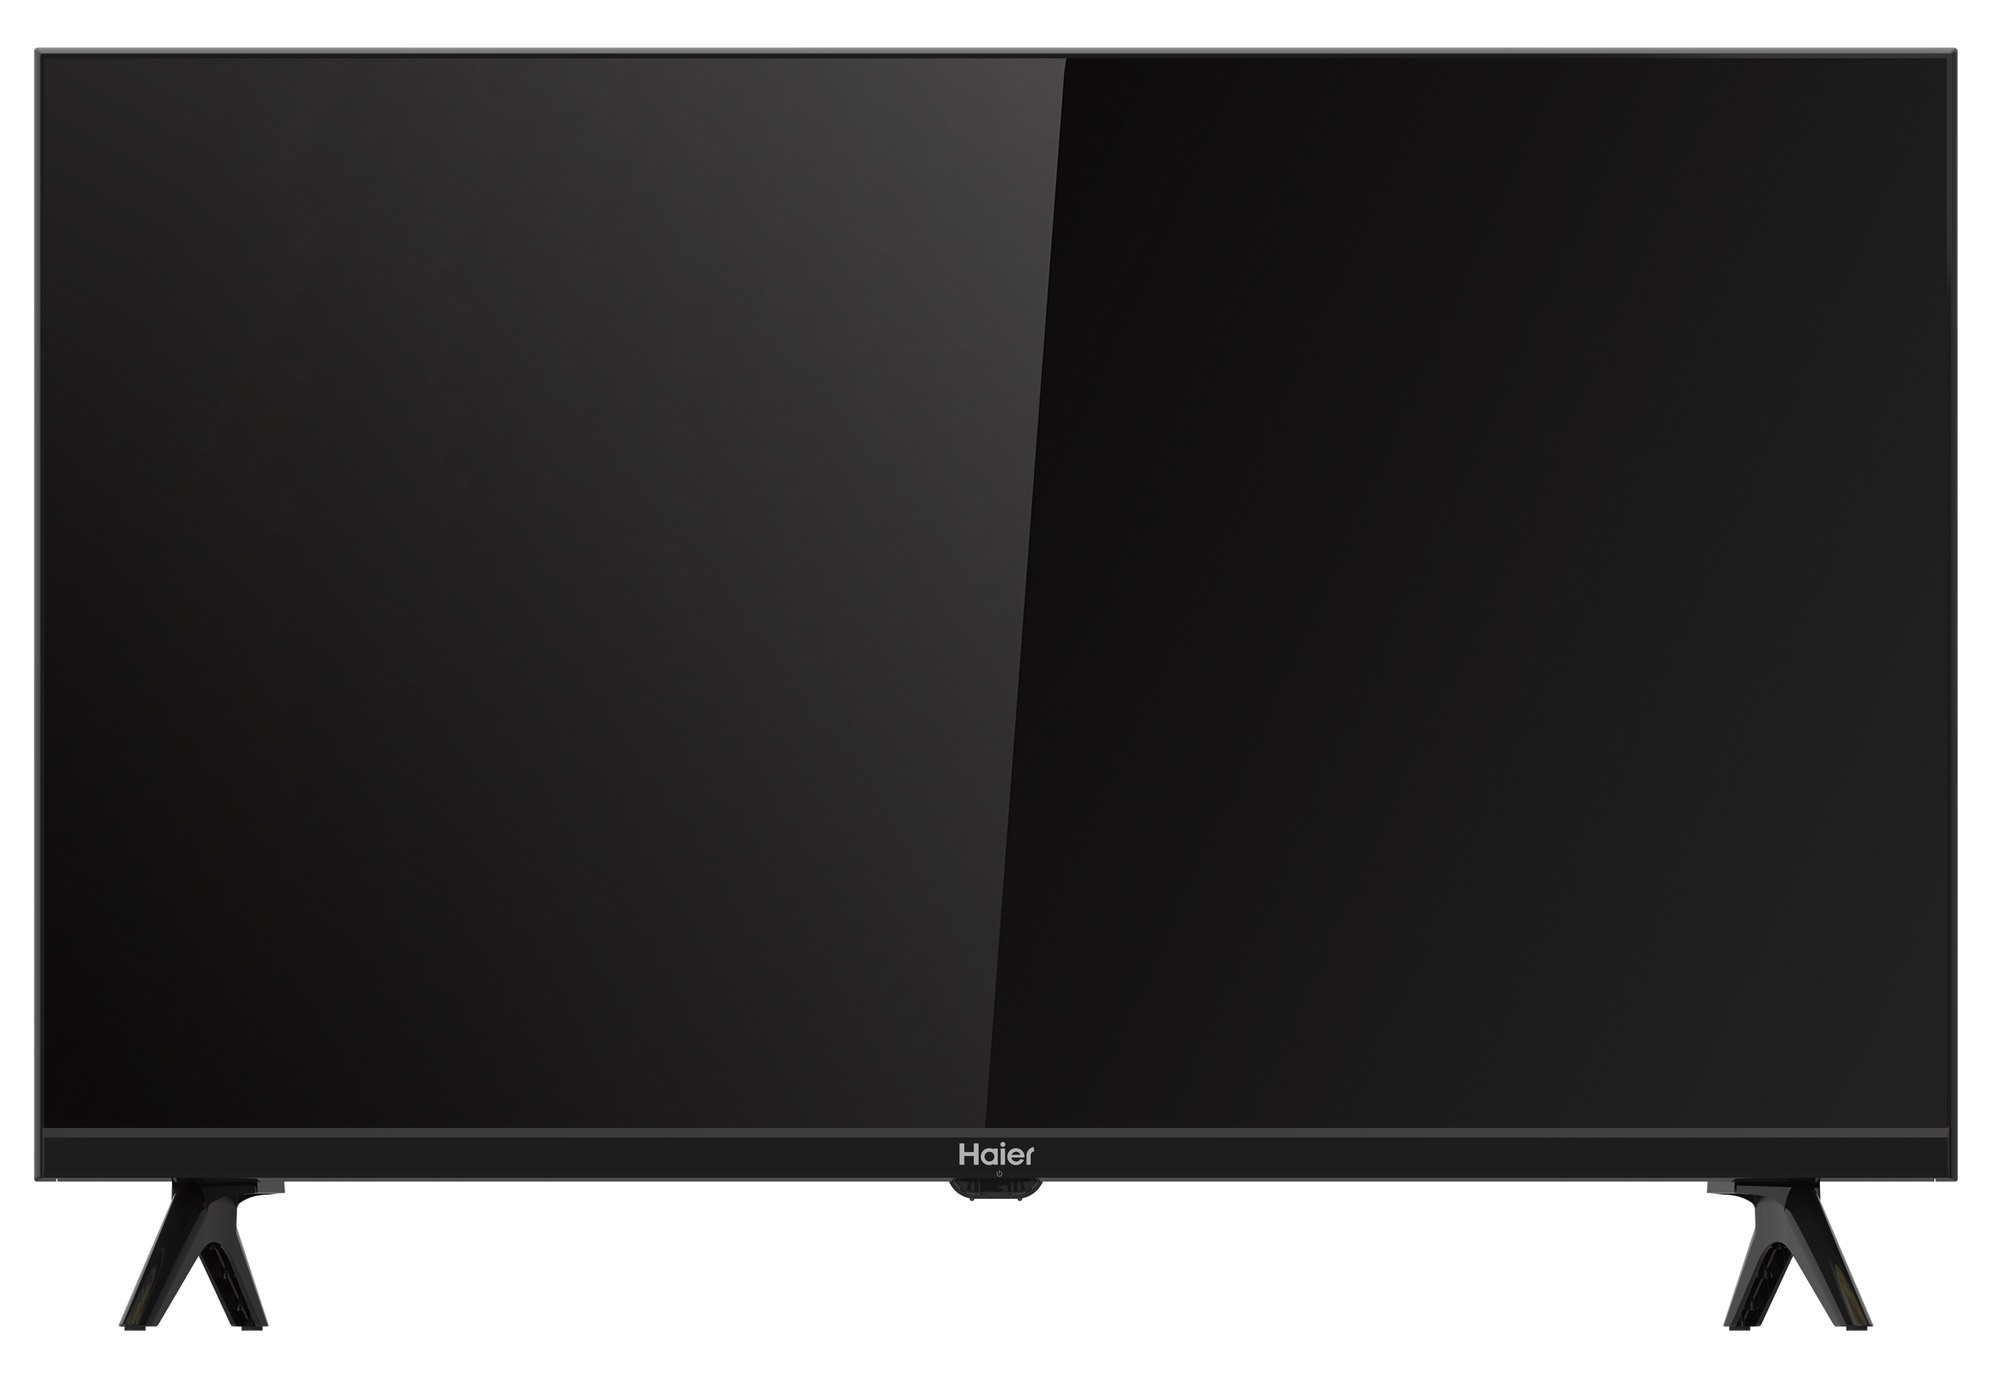 Телевизор haier 32 smart tv s1 отзыв. Телевизор Haier 32 Smart TV s1. Телевизор Haier 32 Smart TV s1, 32"(81 см), FHD. Haier 32 Smart TV s1, 32"(81 см).